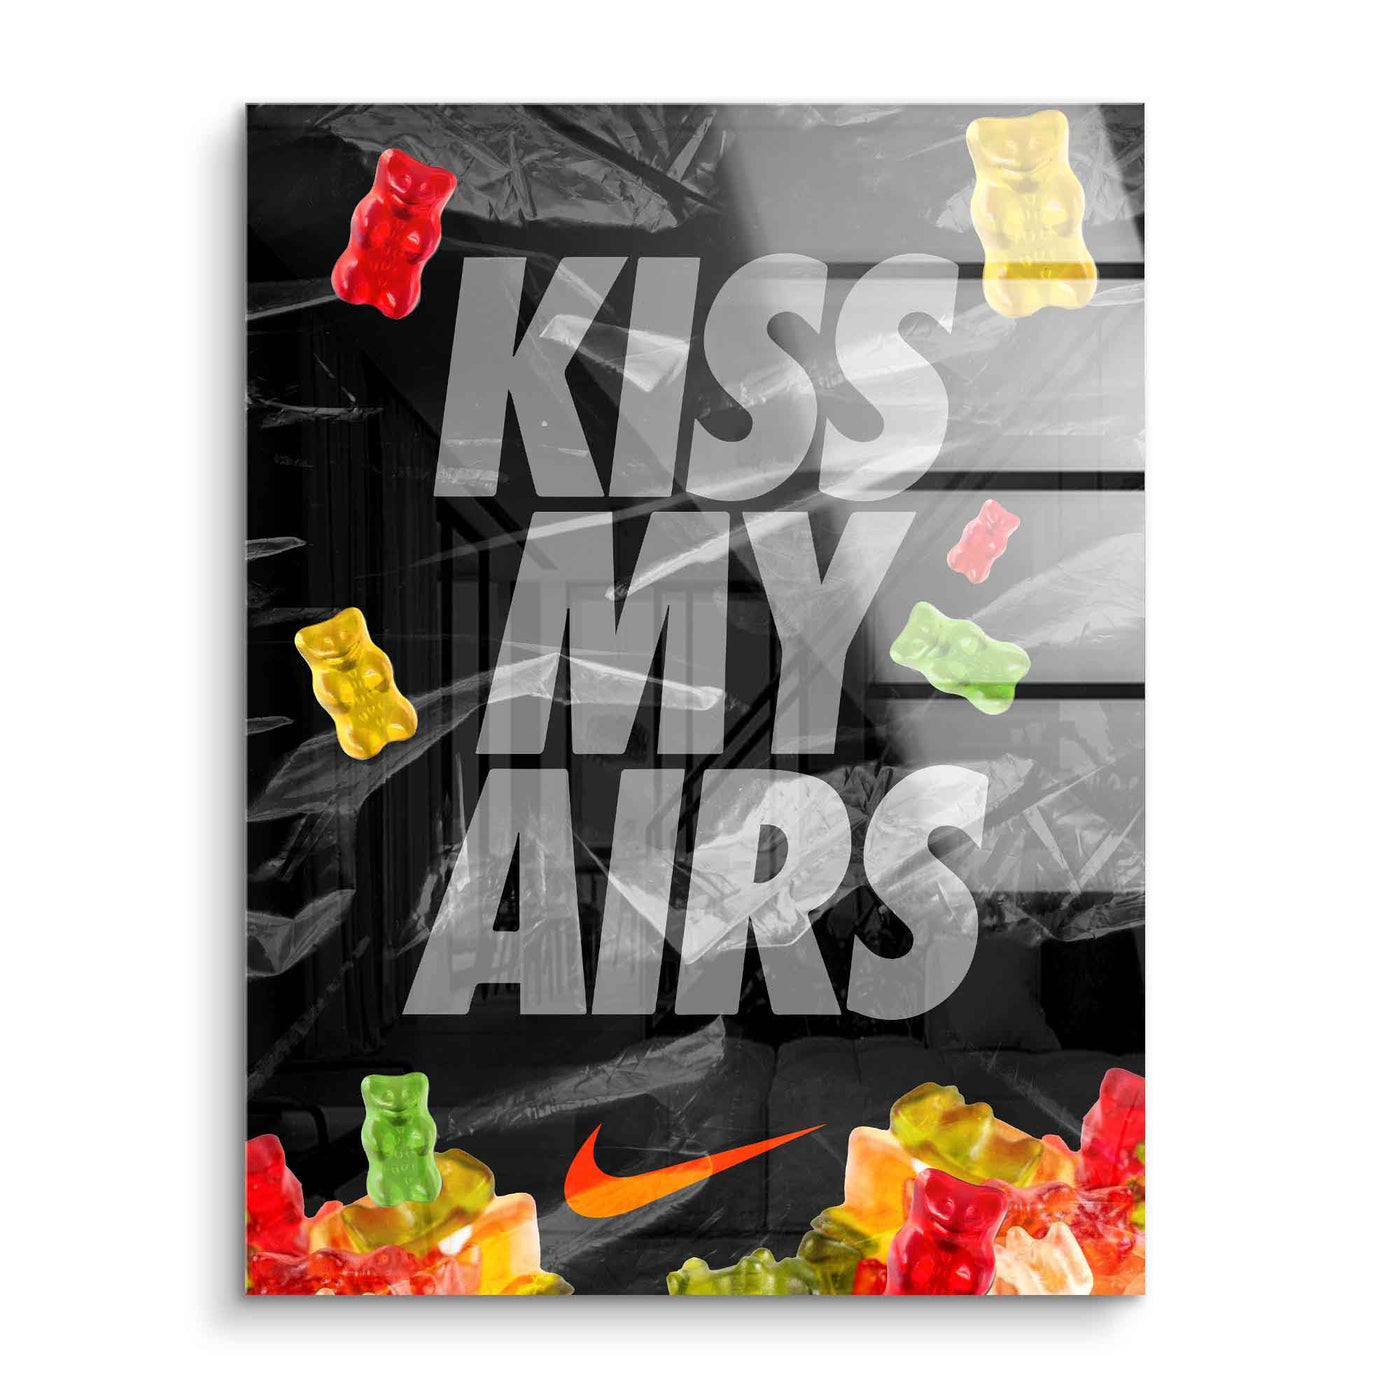 Kiss my Airs